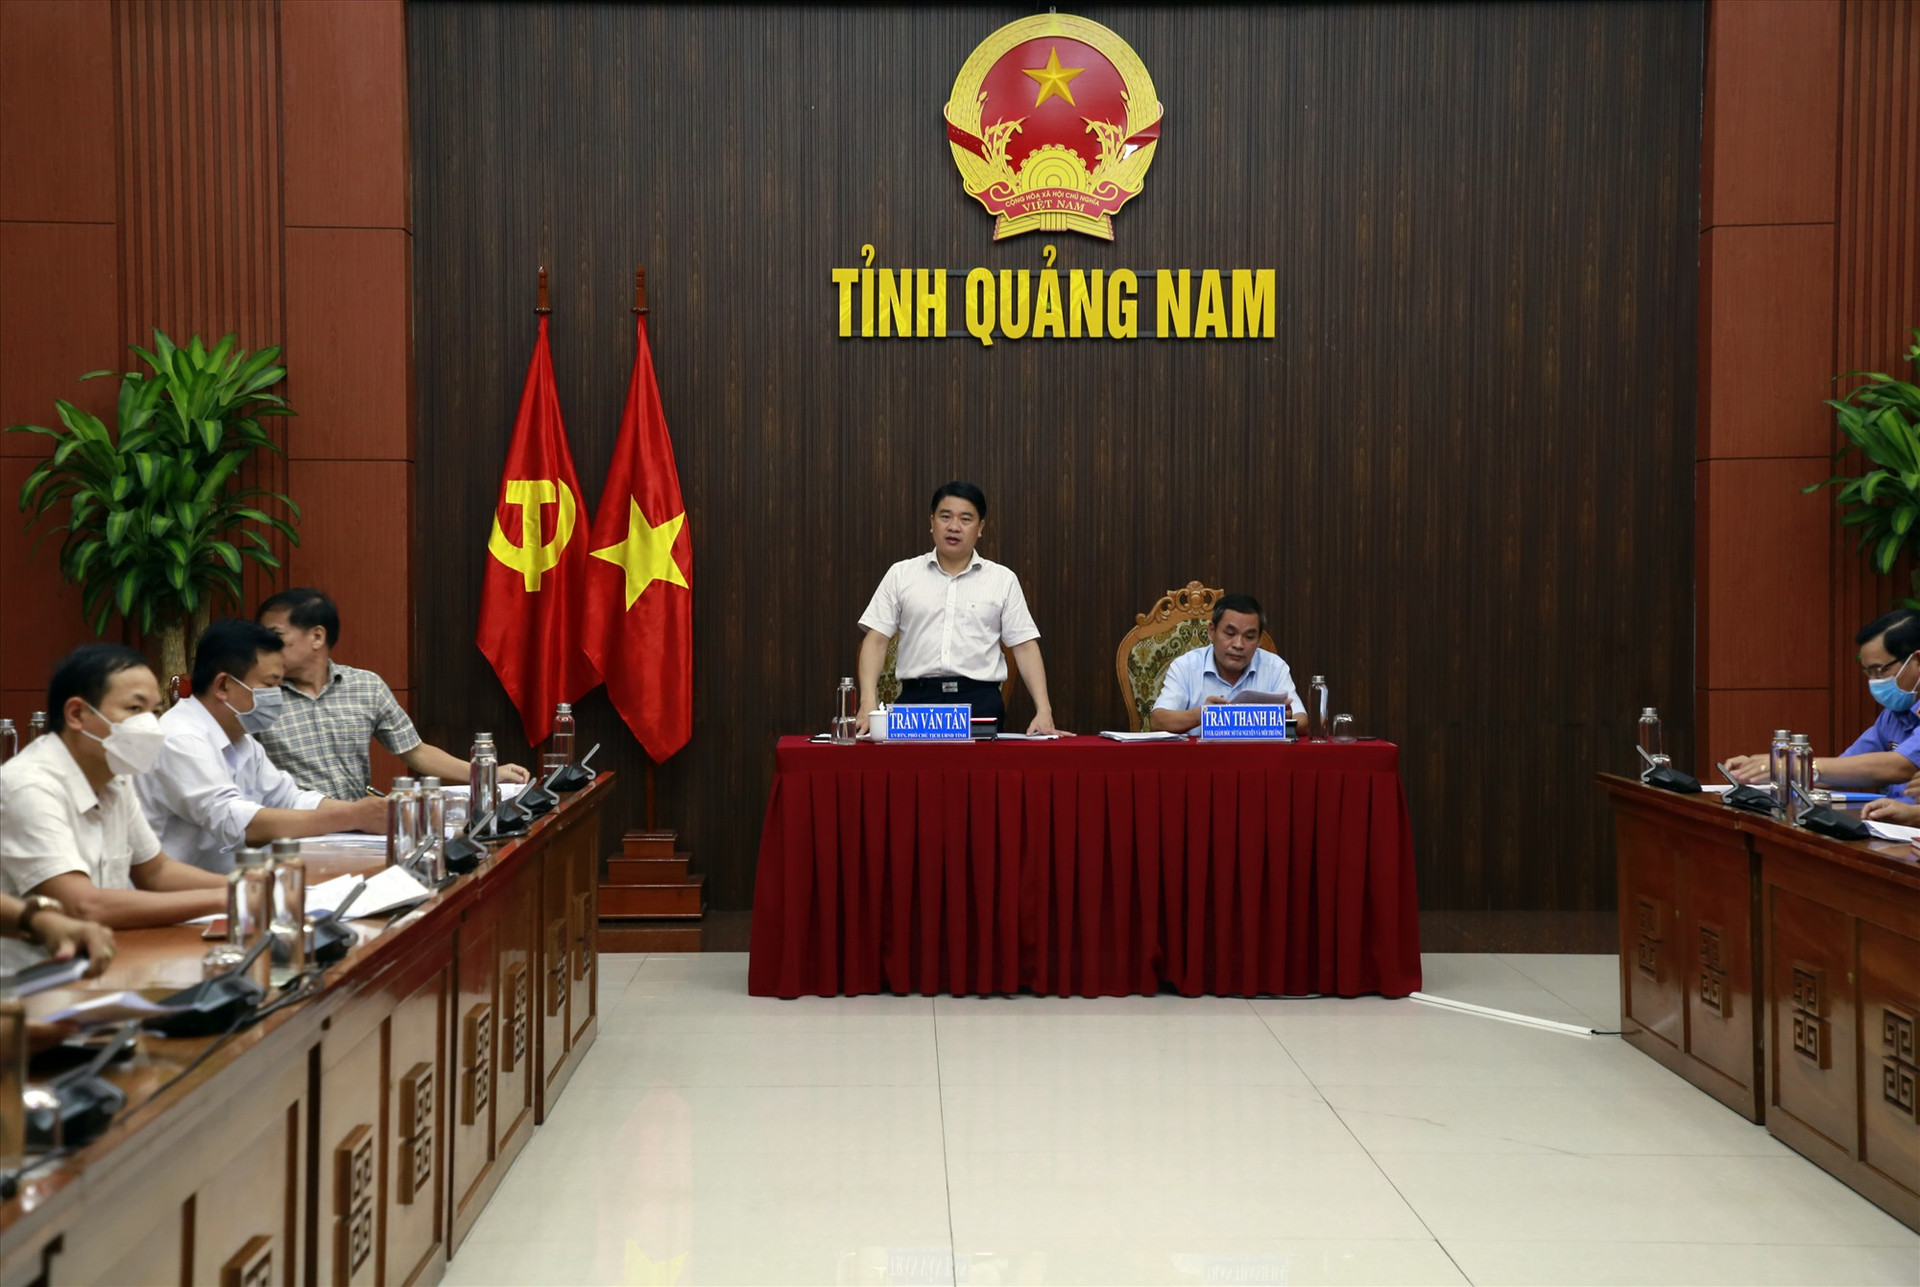 Phó Chủ tịch UBND tỉnh Trần Văn Tân phê bình nhiều địa phương chậm trễ trong rà soát, báo cáo liên quan đến việc cấp GCNQSDĐ ghi đất thổ cư. Ảnh: T.C